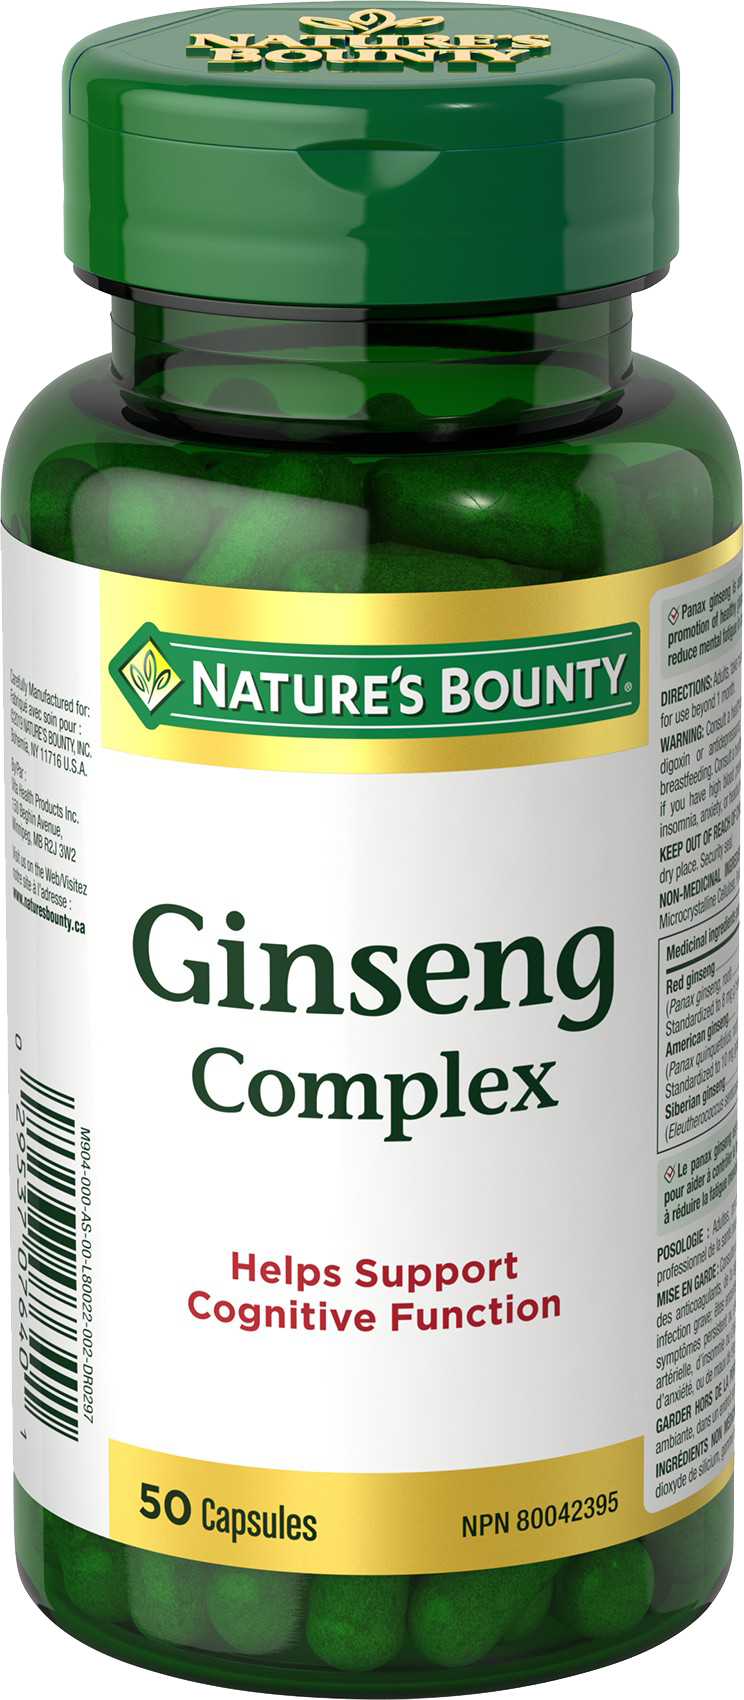 Ginseng Complex